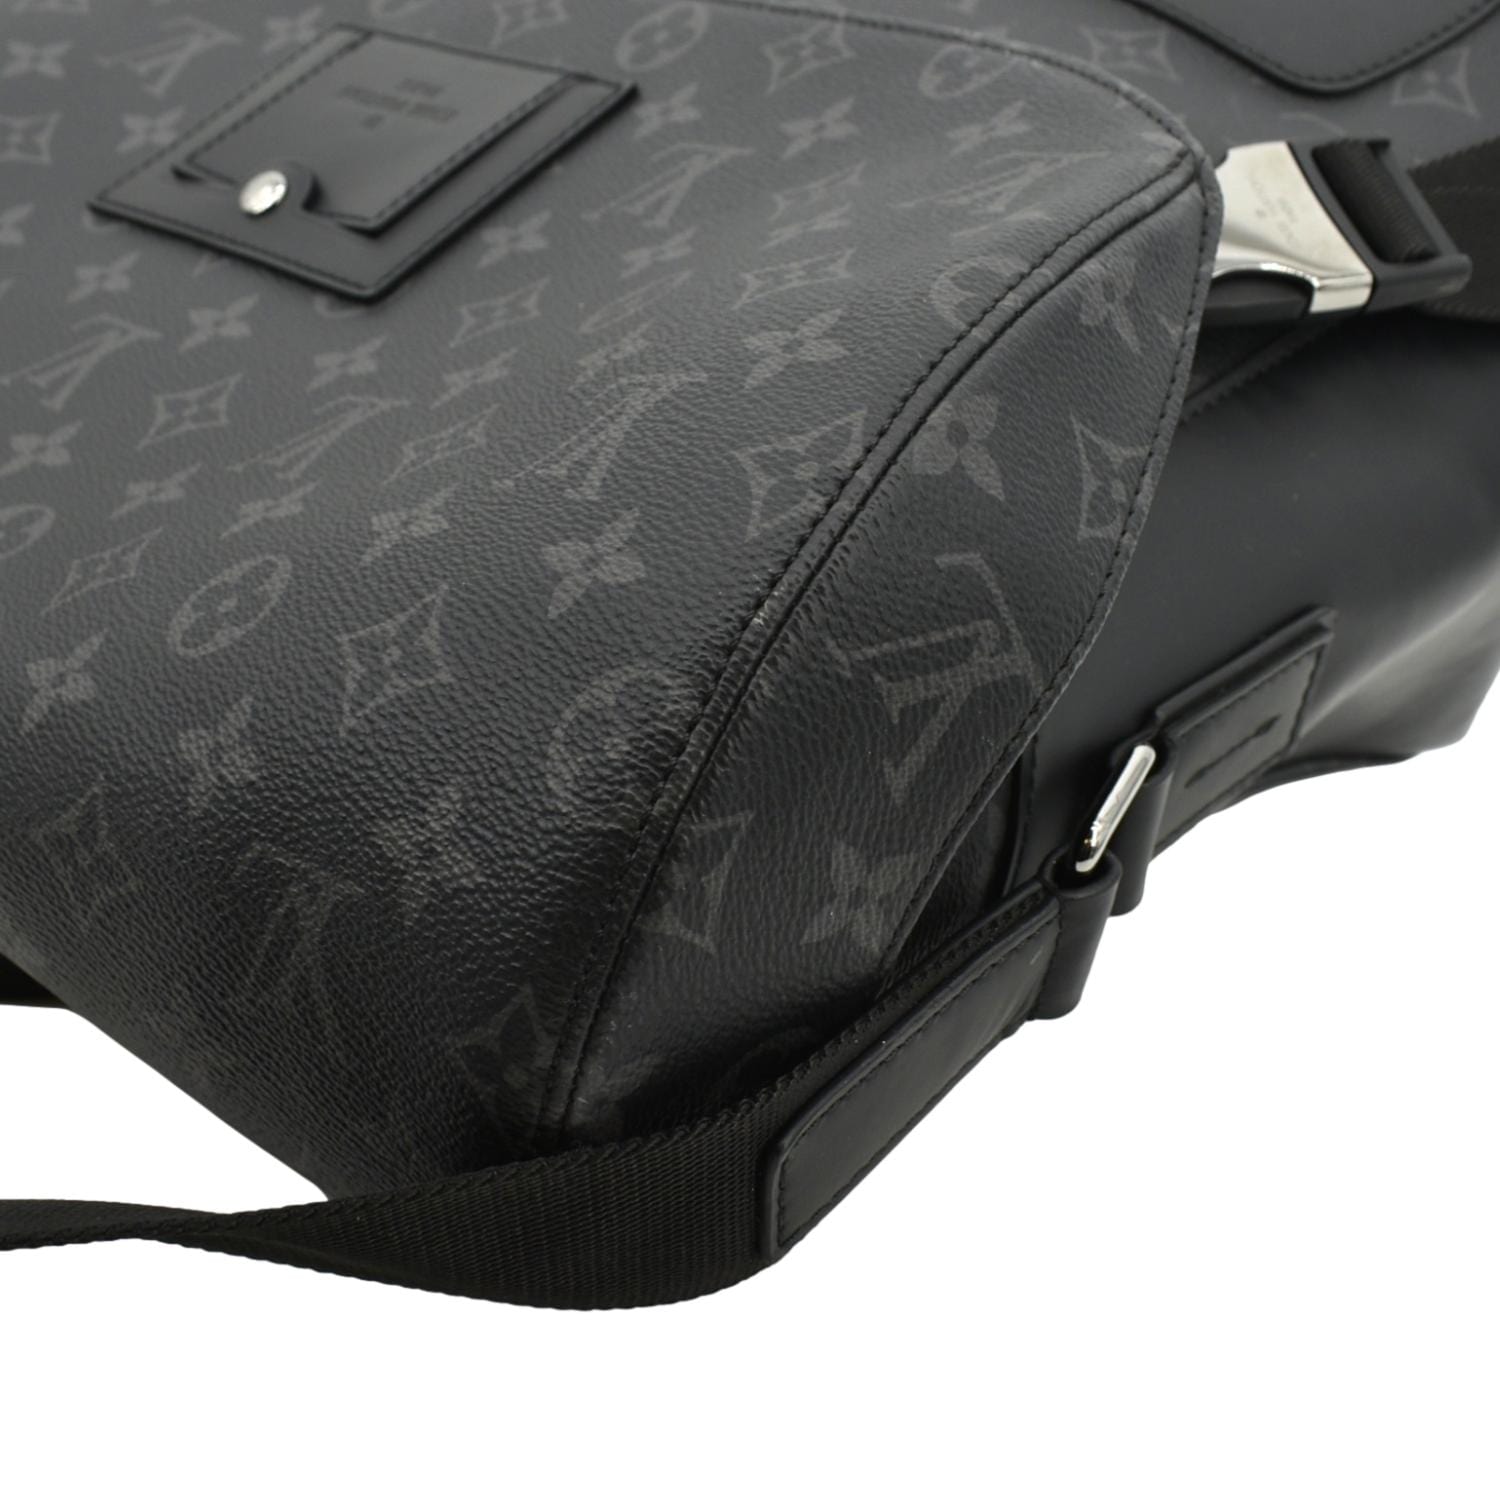 Louis Vuitton Voyager MM Monogram Messenger Bag Black